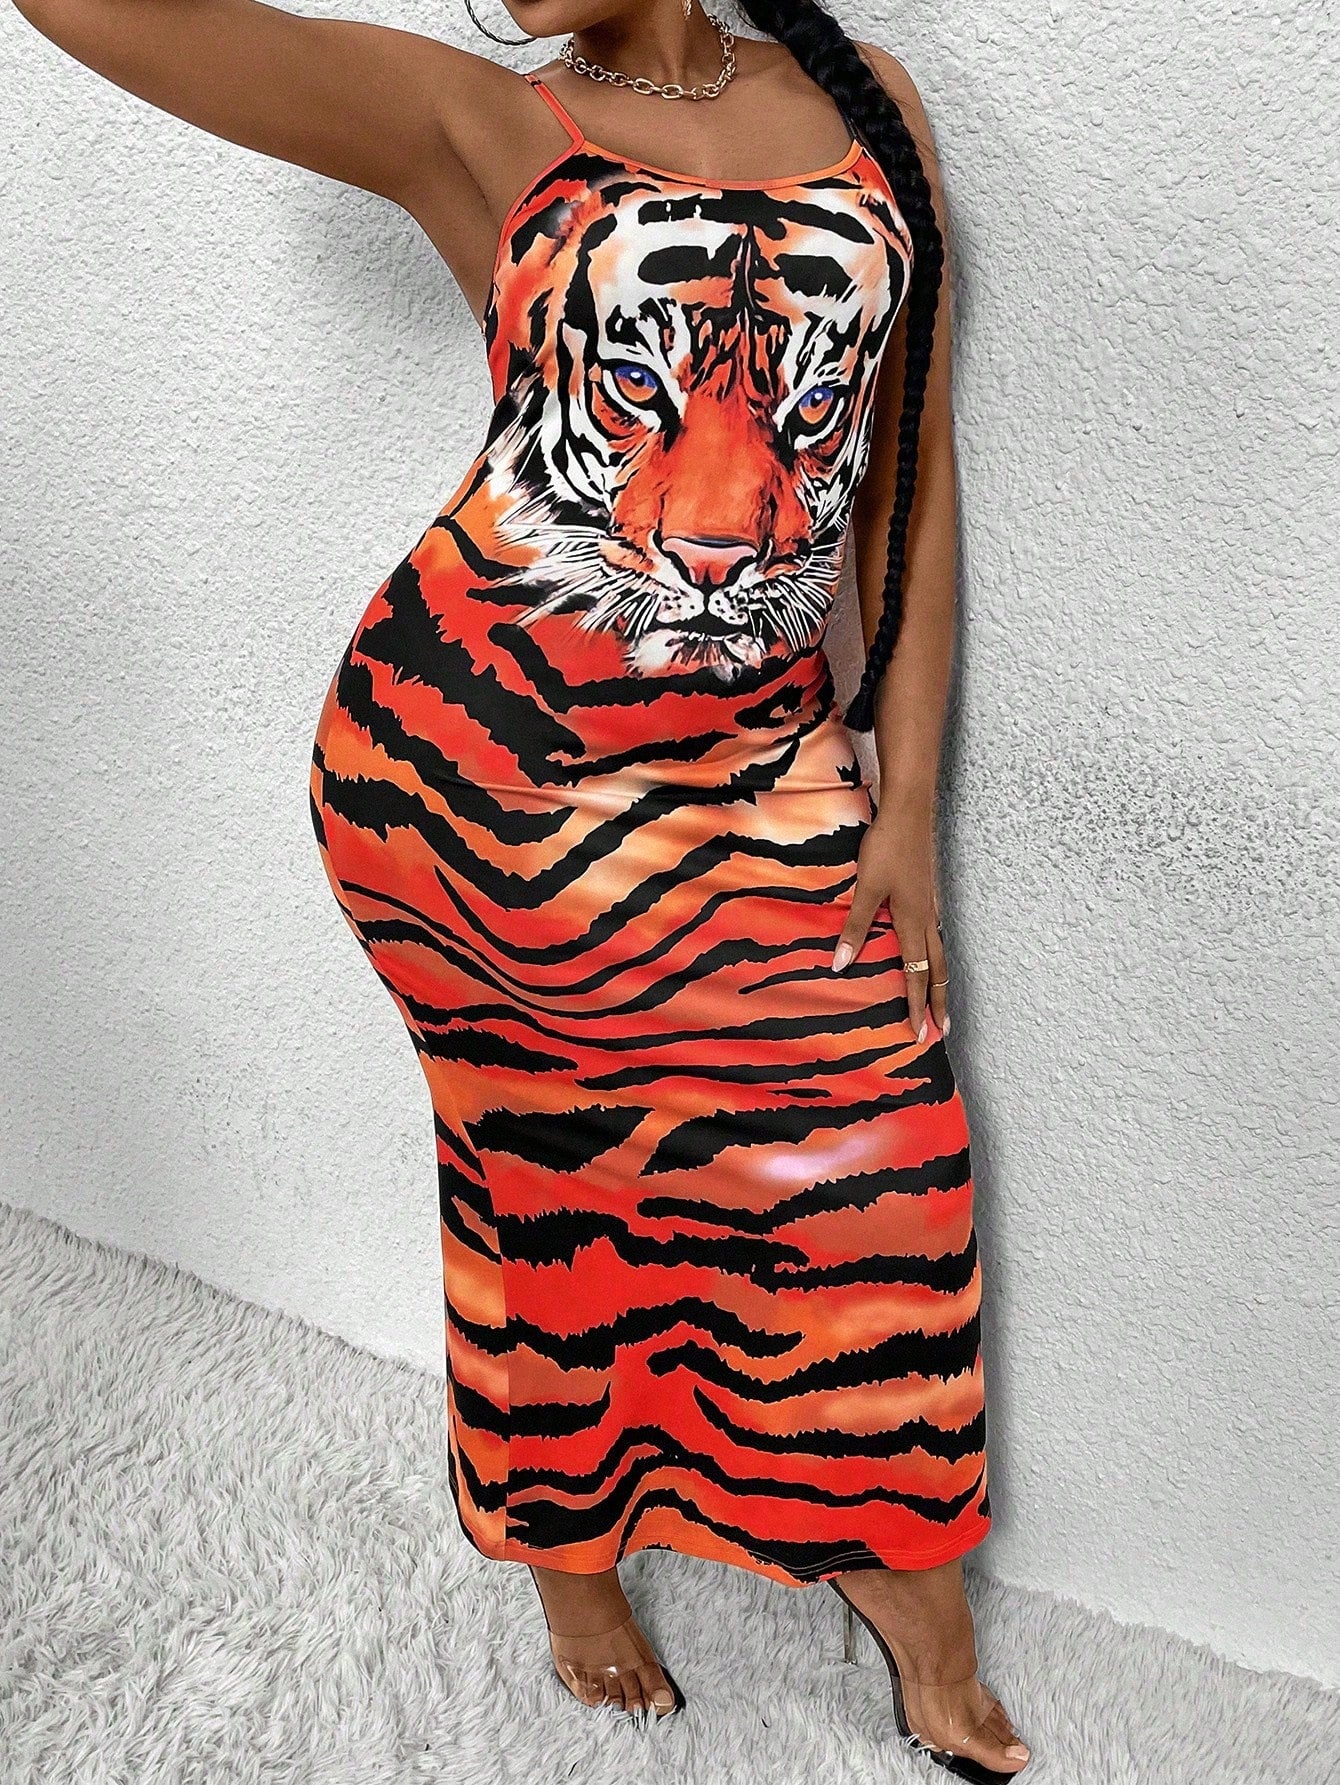 Plus Size Women's Tiger Printed Spaghetti Strap Dress